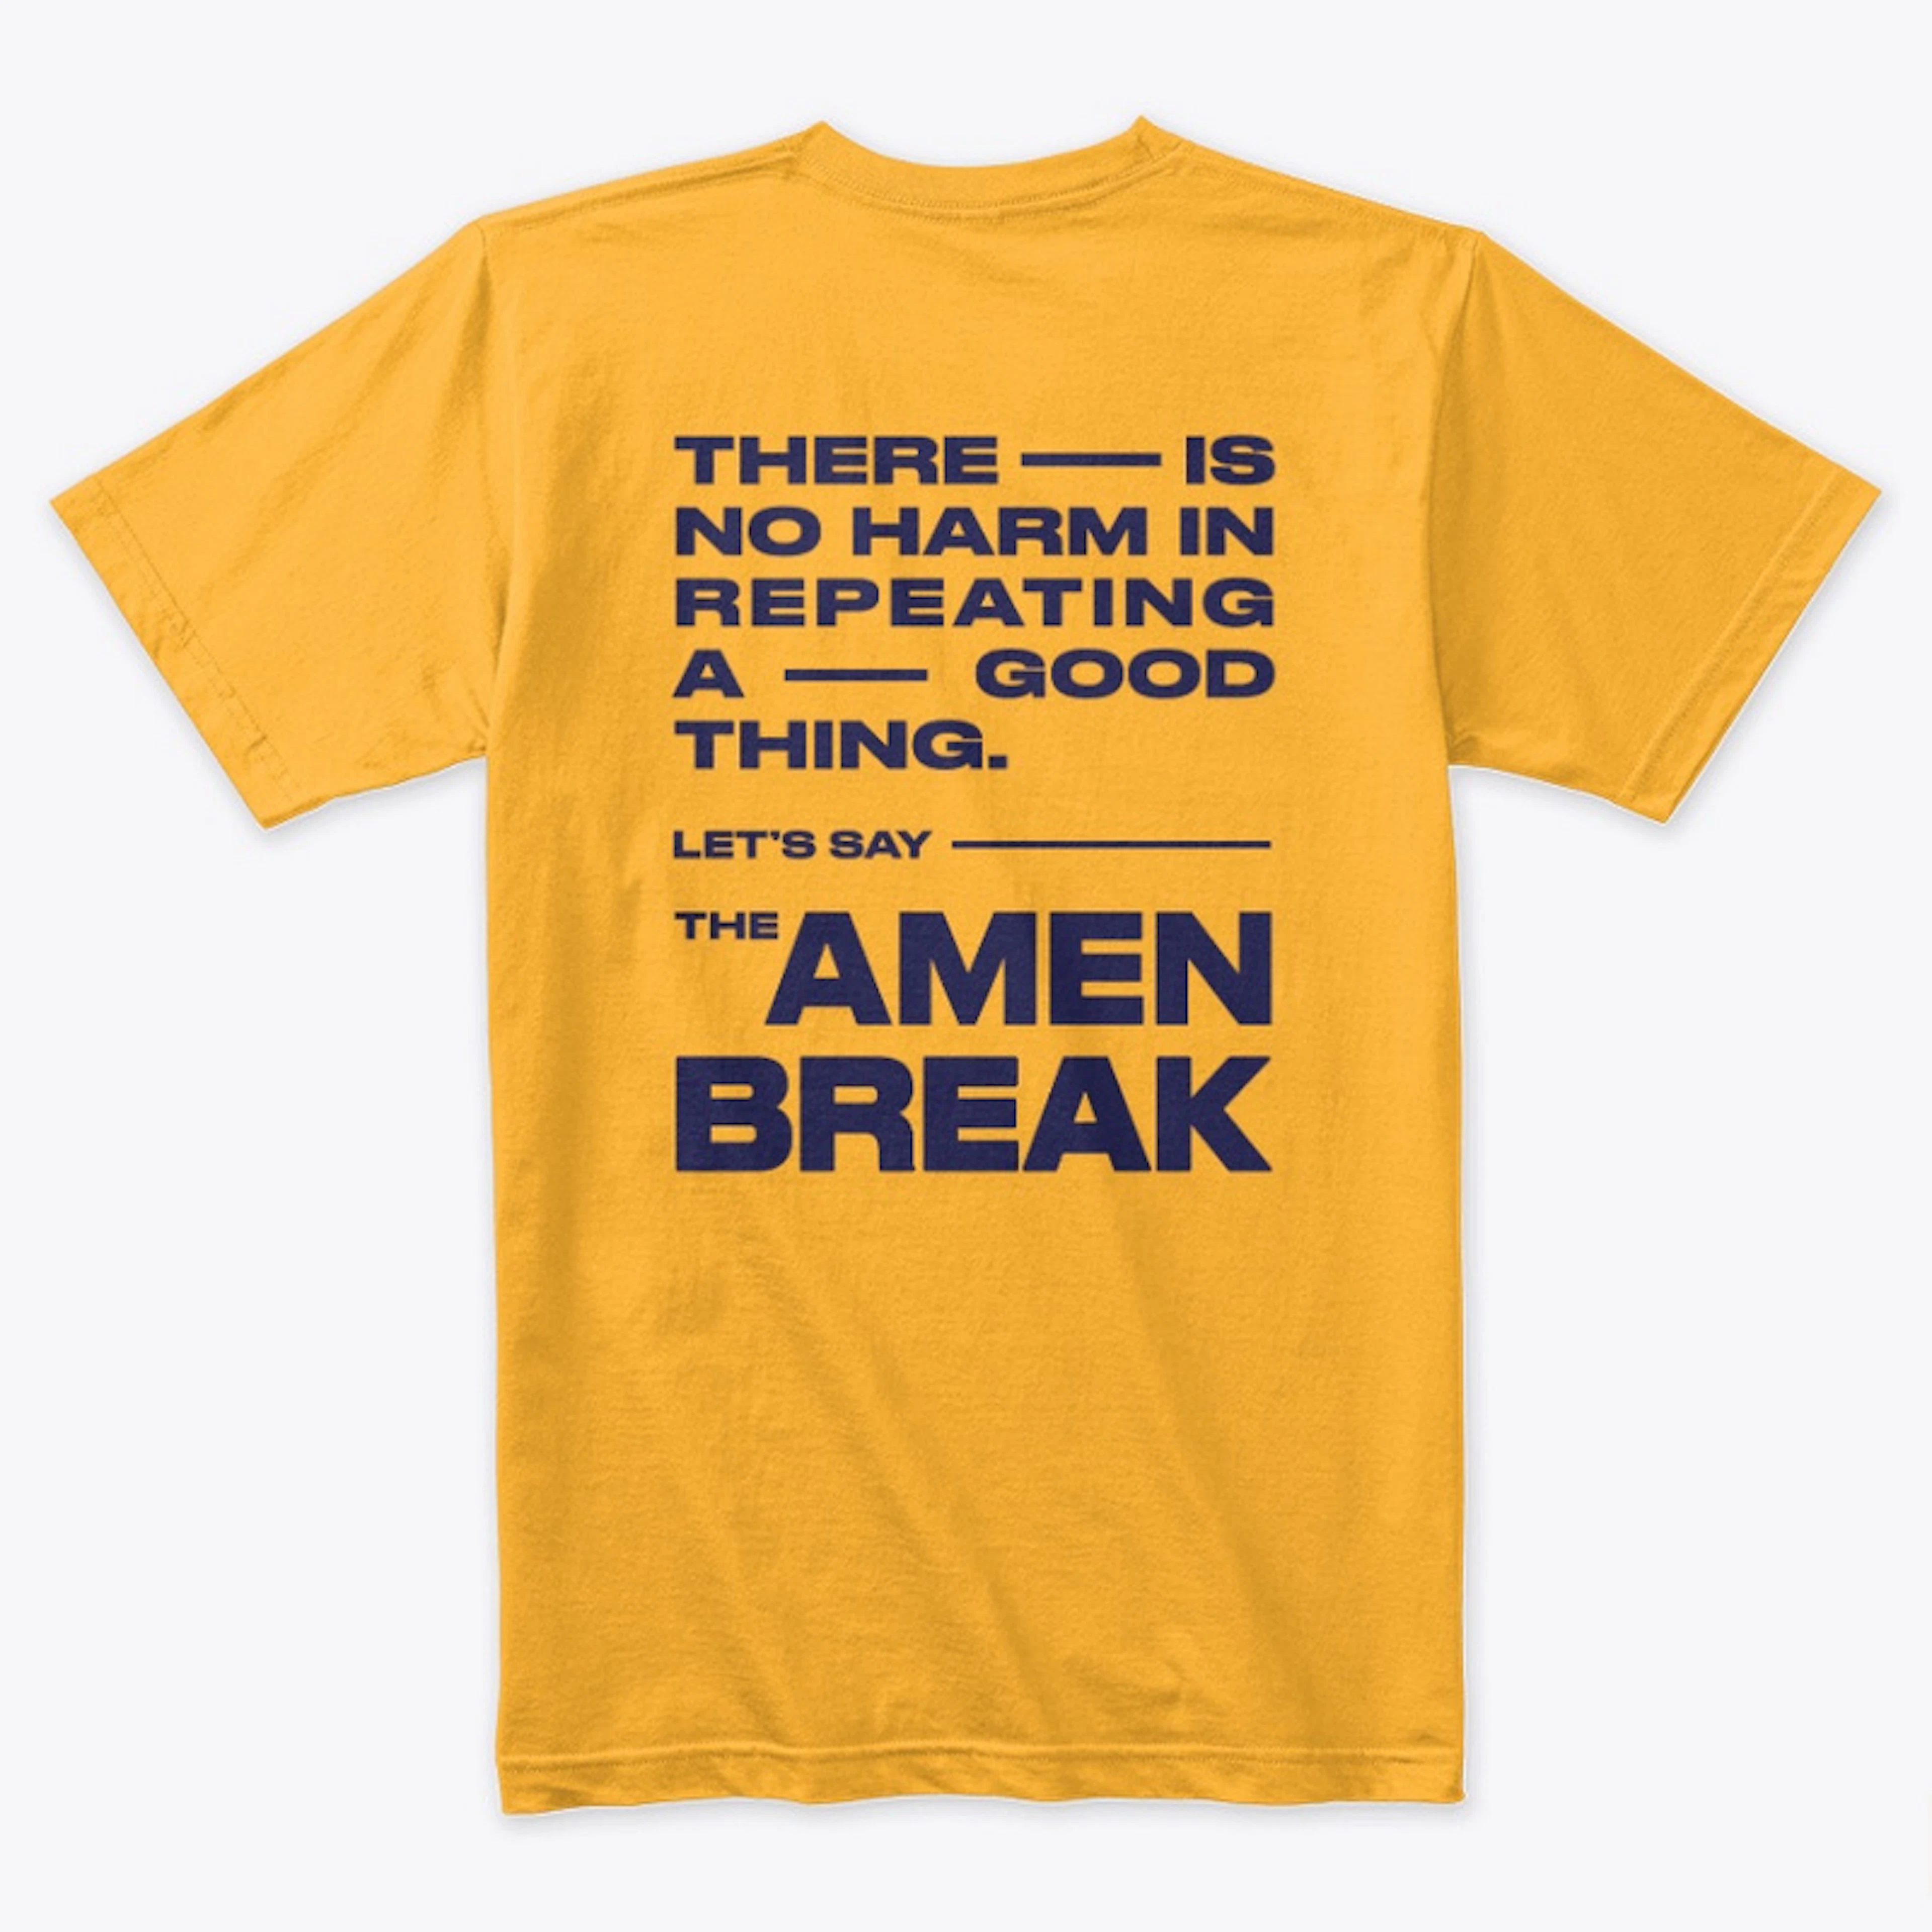 The Amen Break